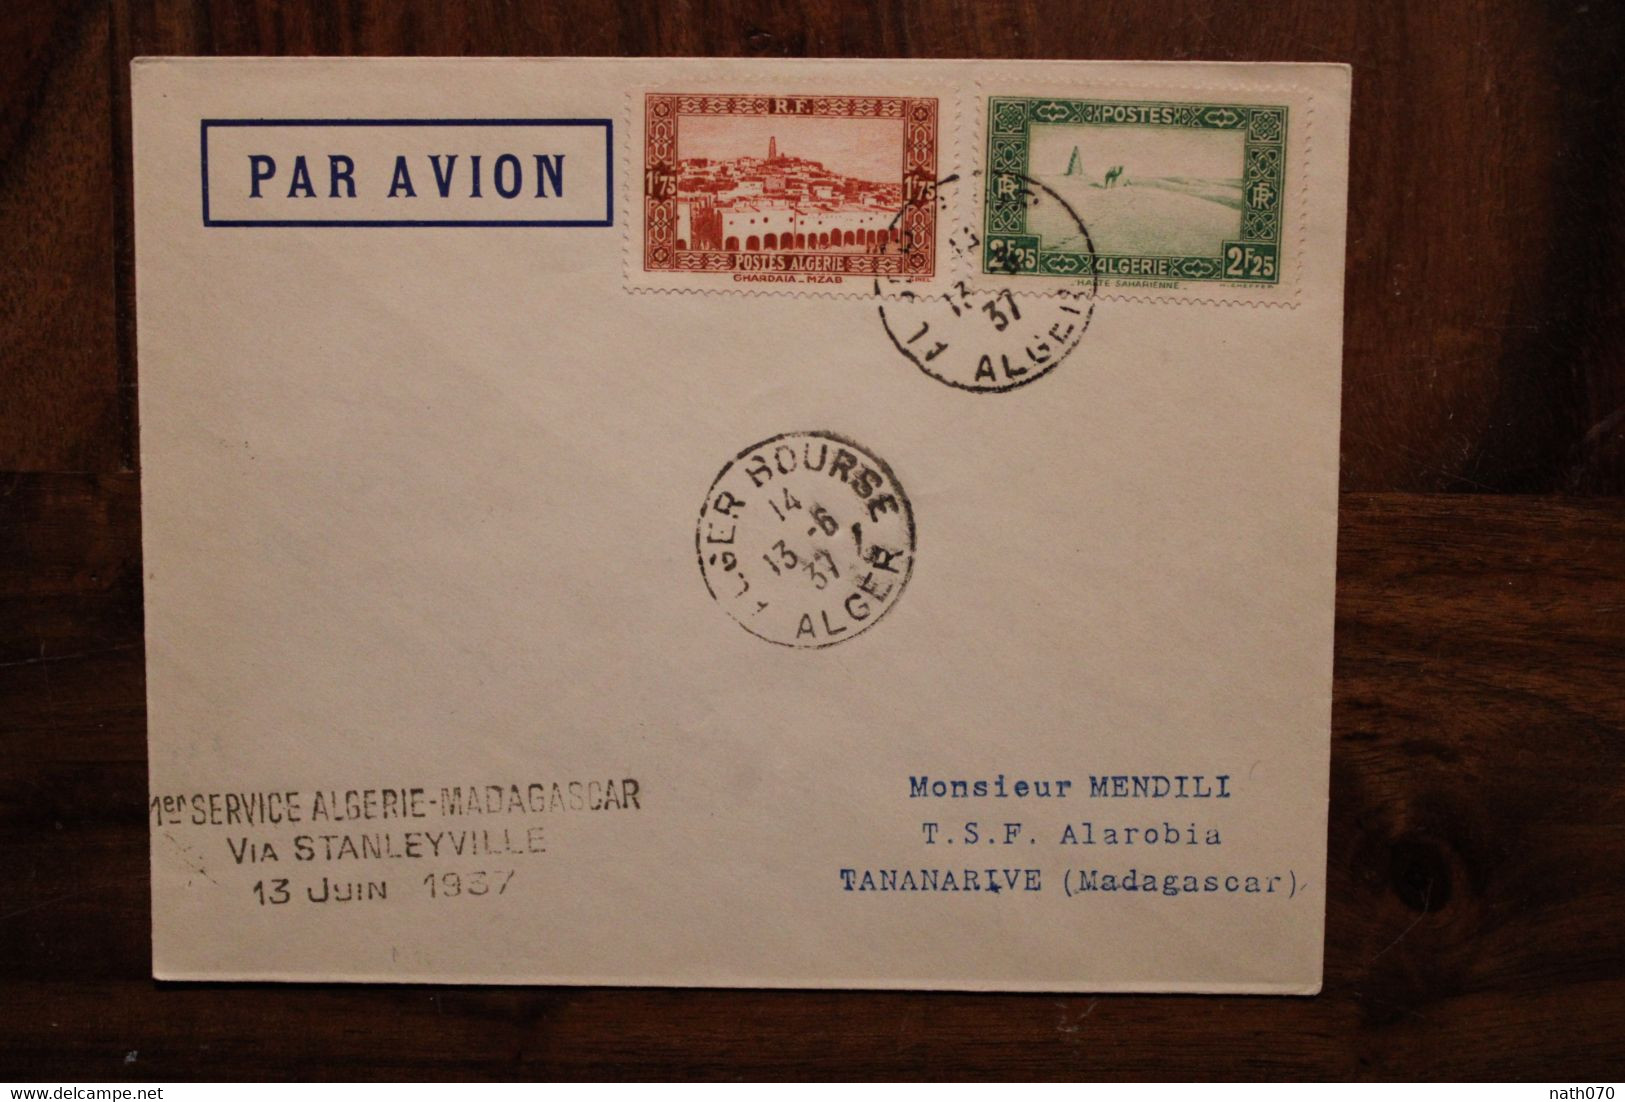 1937 1er Service Algérie Madagascar France Via Stanleyville  Enveloppe Cover Colonie Par Avion Air Mail - Luchtpost